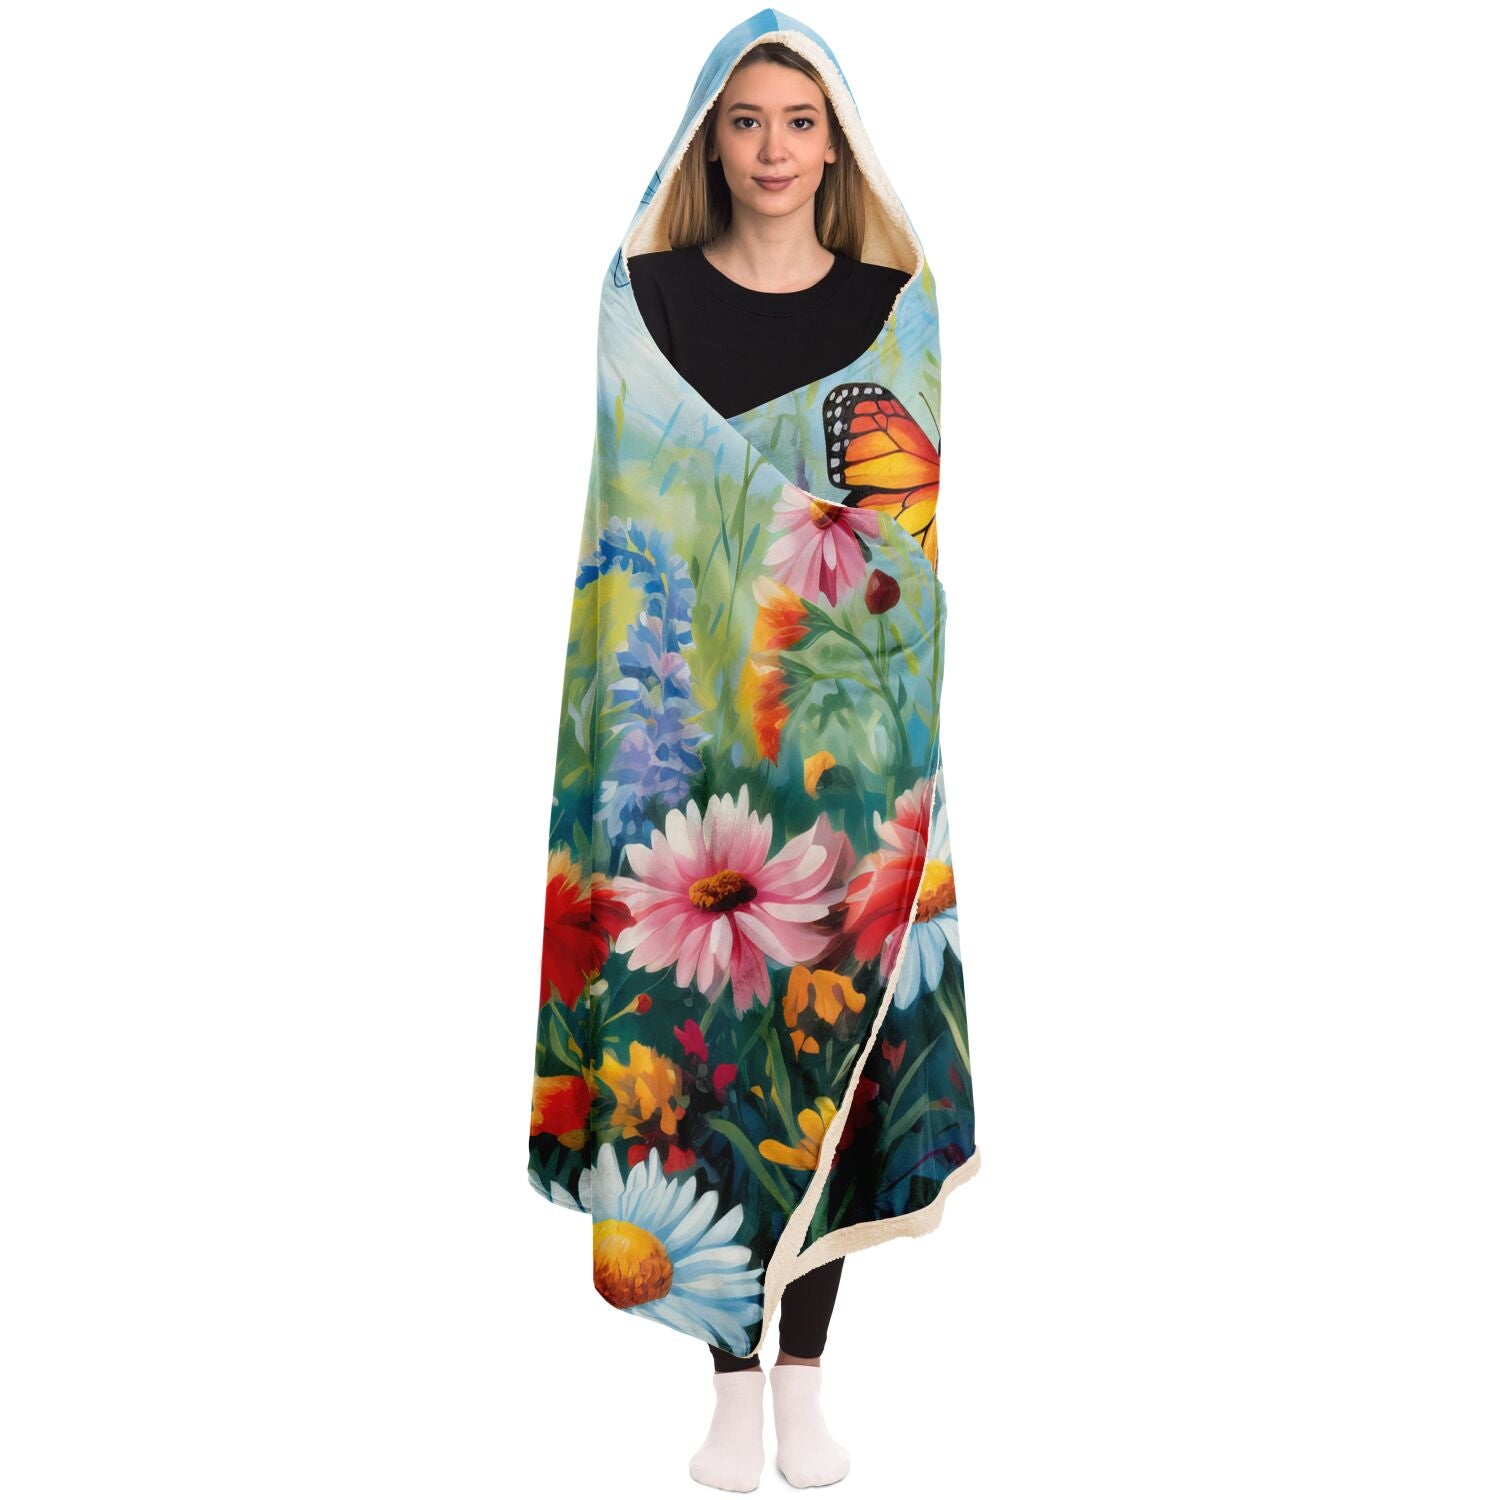 Springtime Hooded Blanket – Offbeat Sweetie